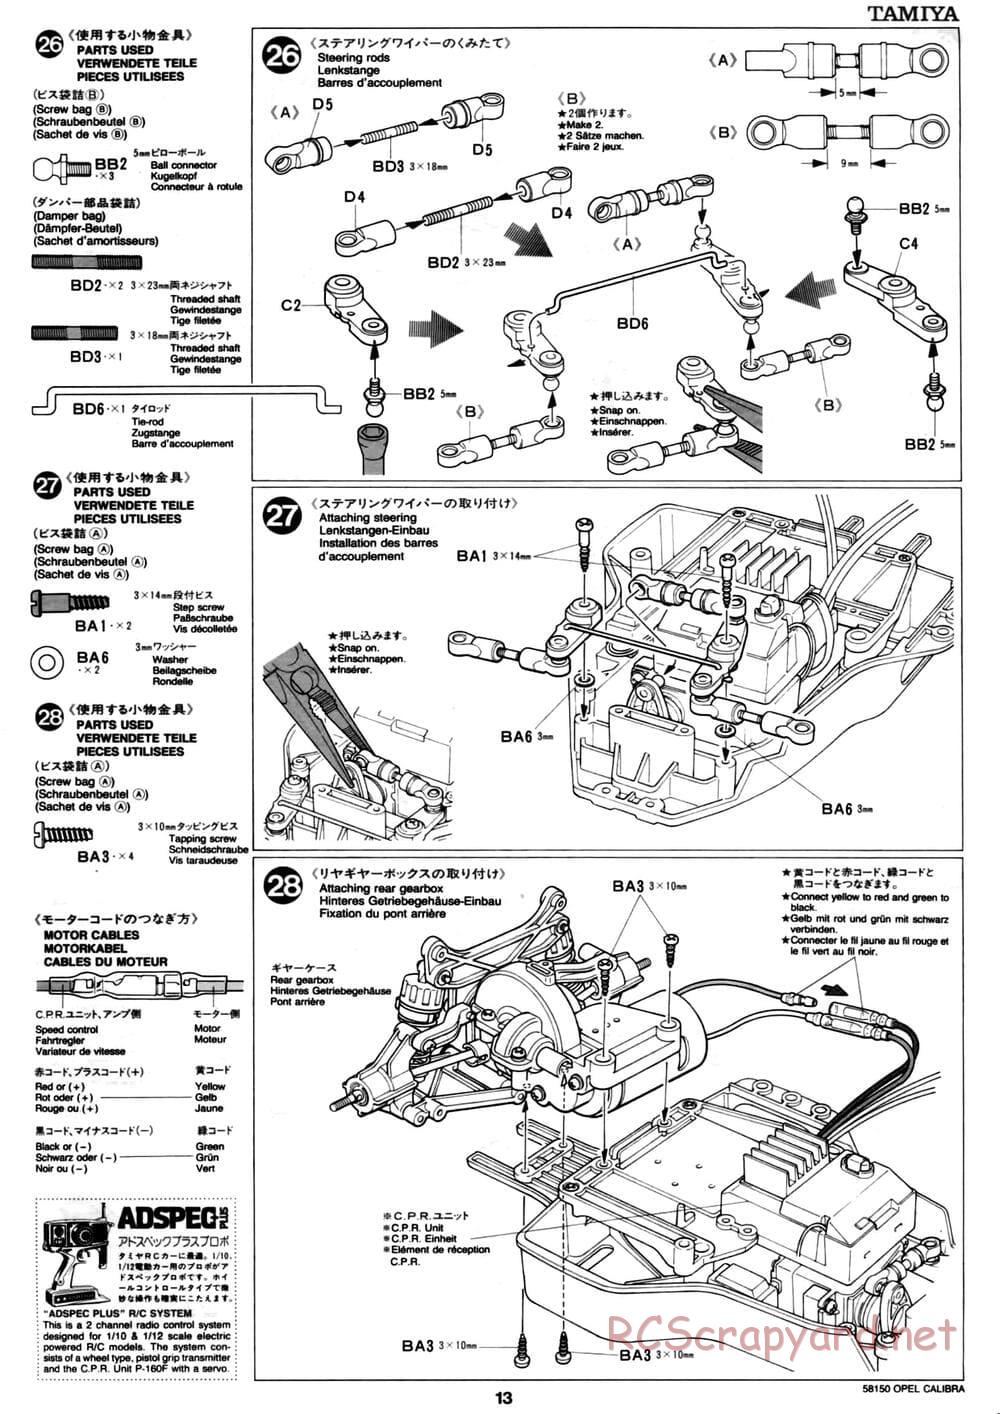 Tamiya - Opel Calibra V6 DTM - TA-02 Chassis - Manual - Page 13